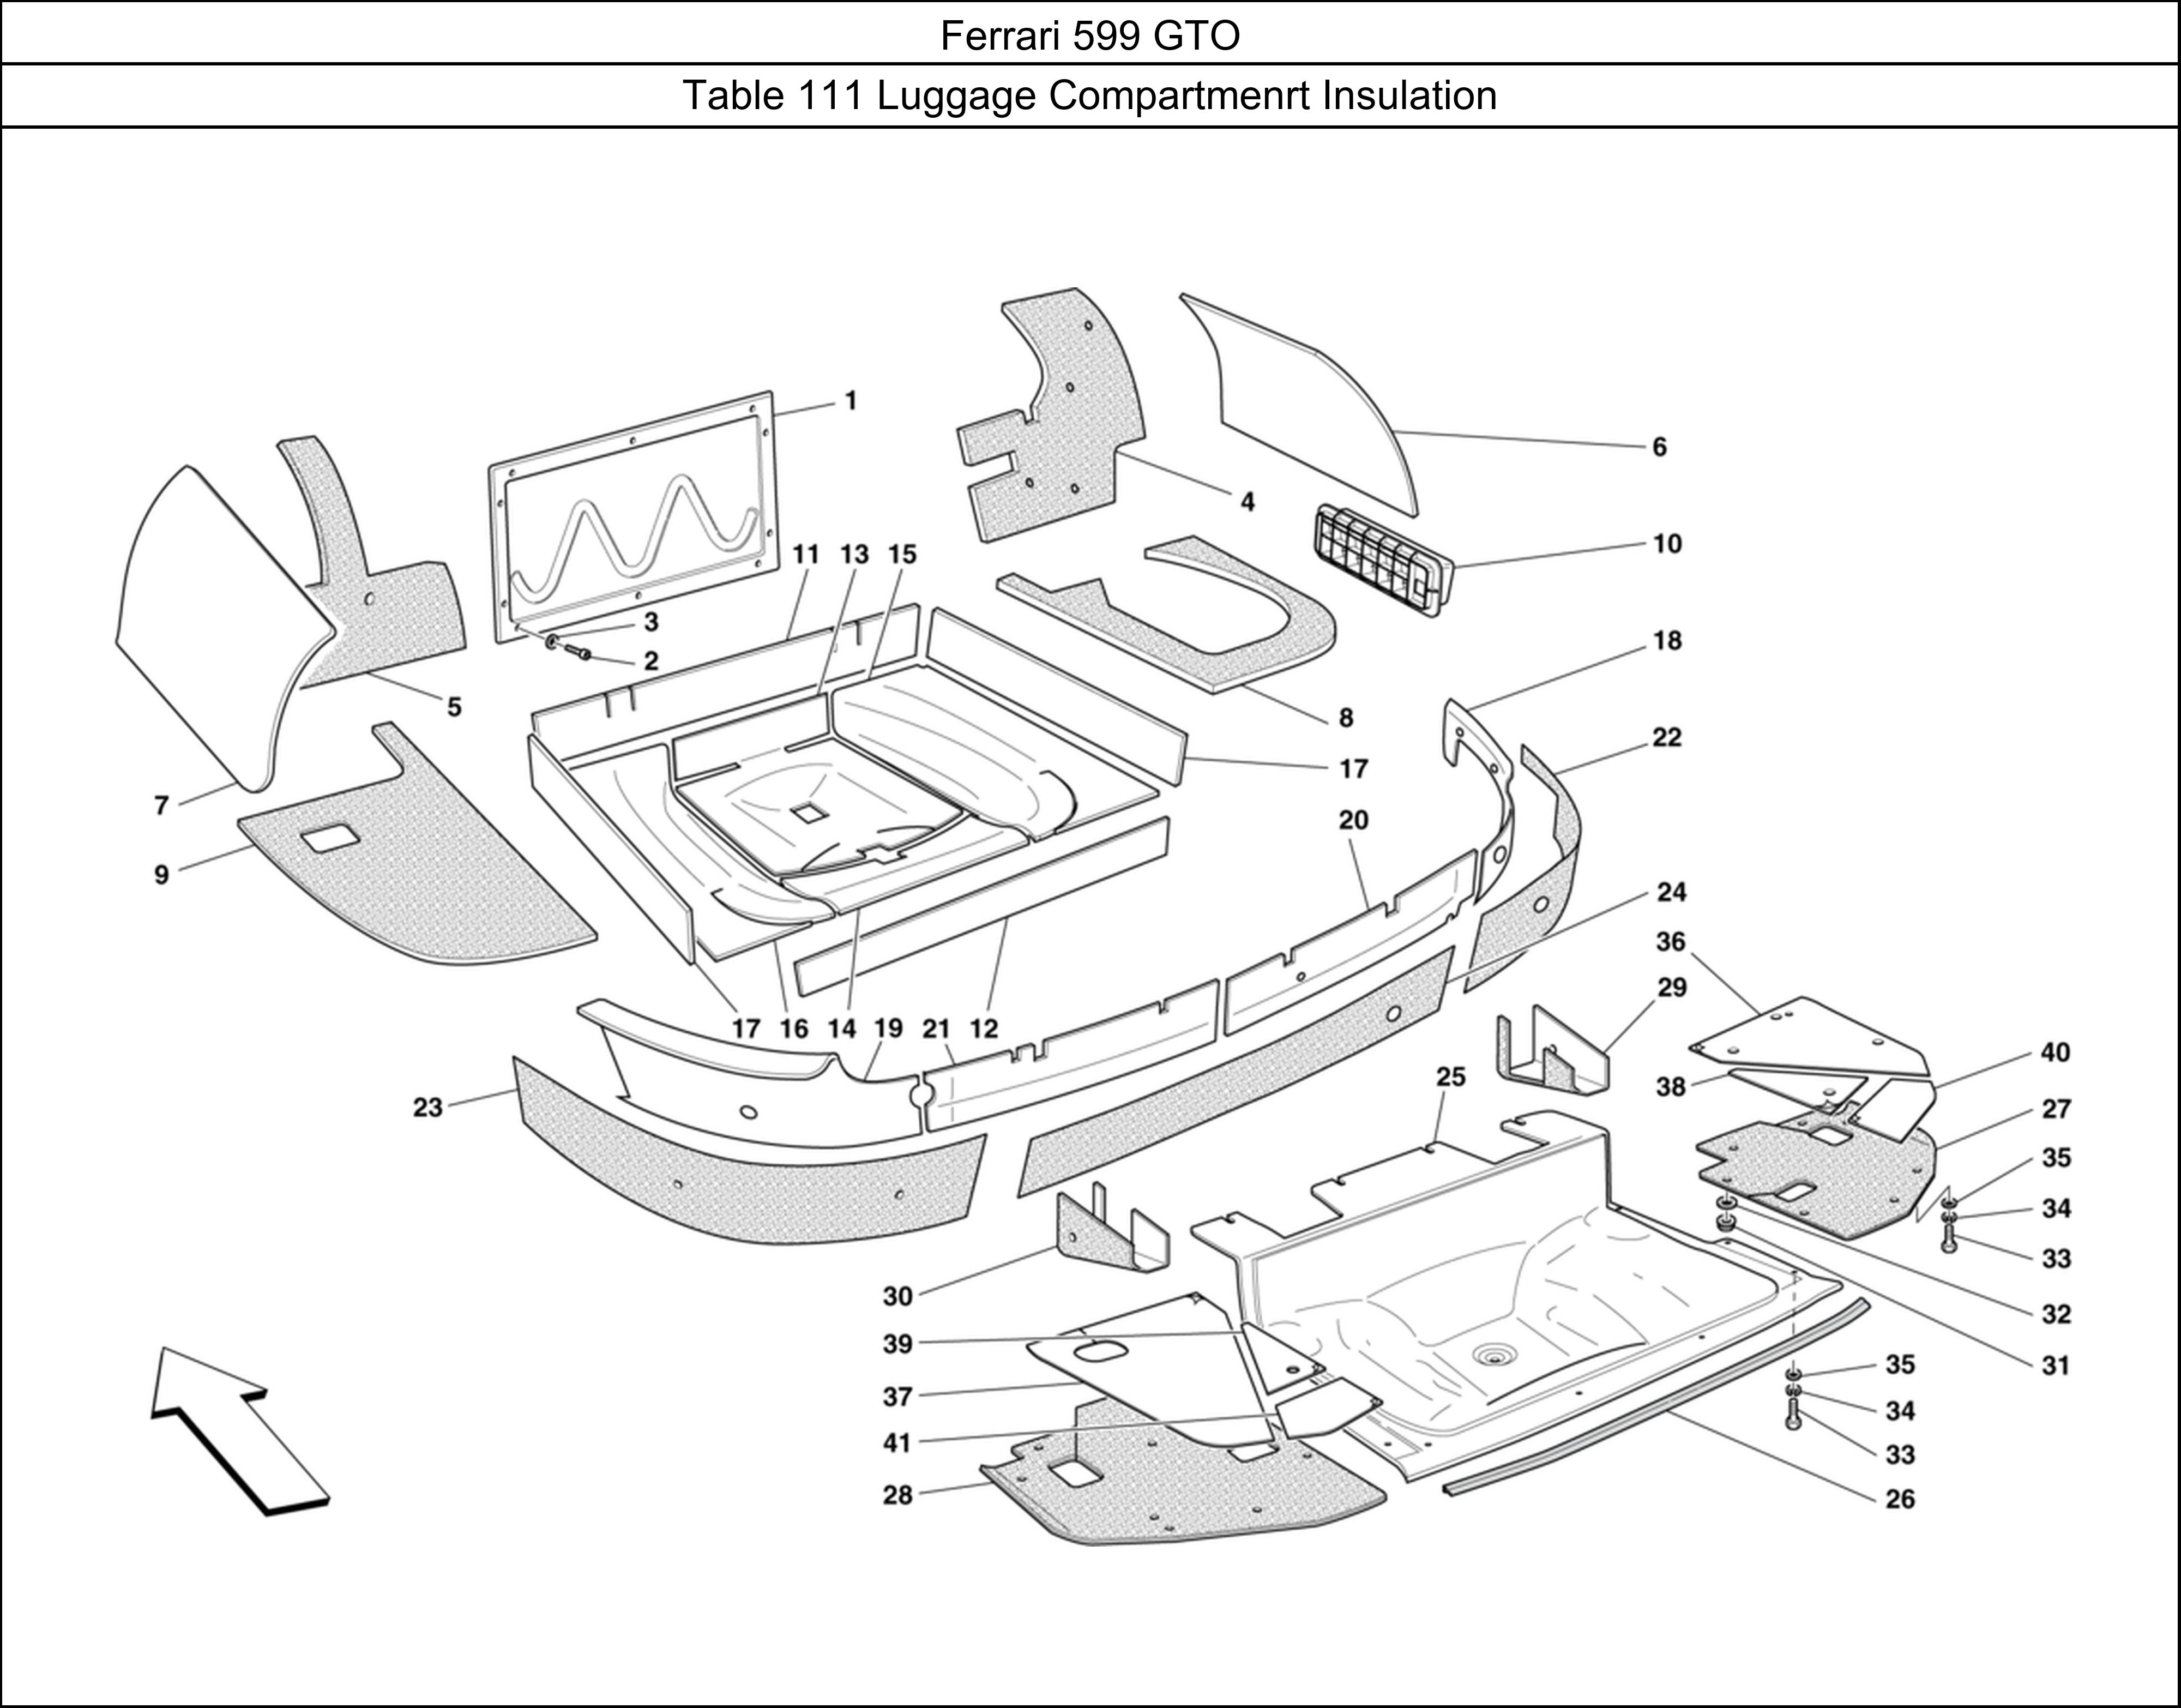 Ferrari Parts Ferrari 599 GTO Table 111 Luggage Compartmenrt Insulation